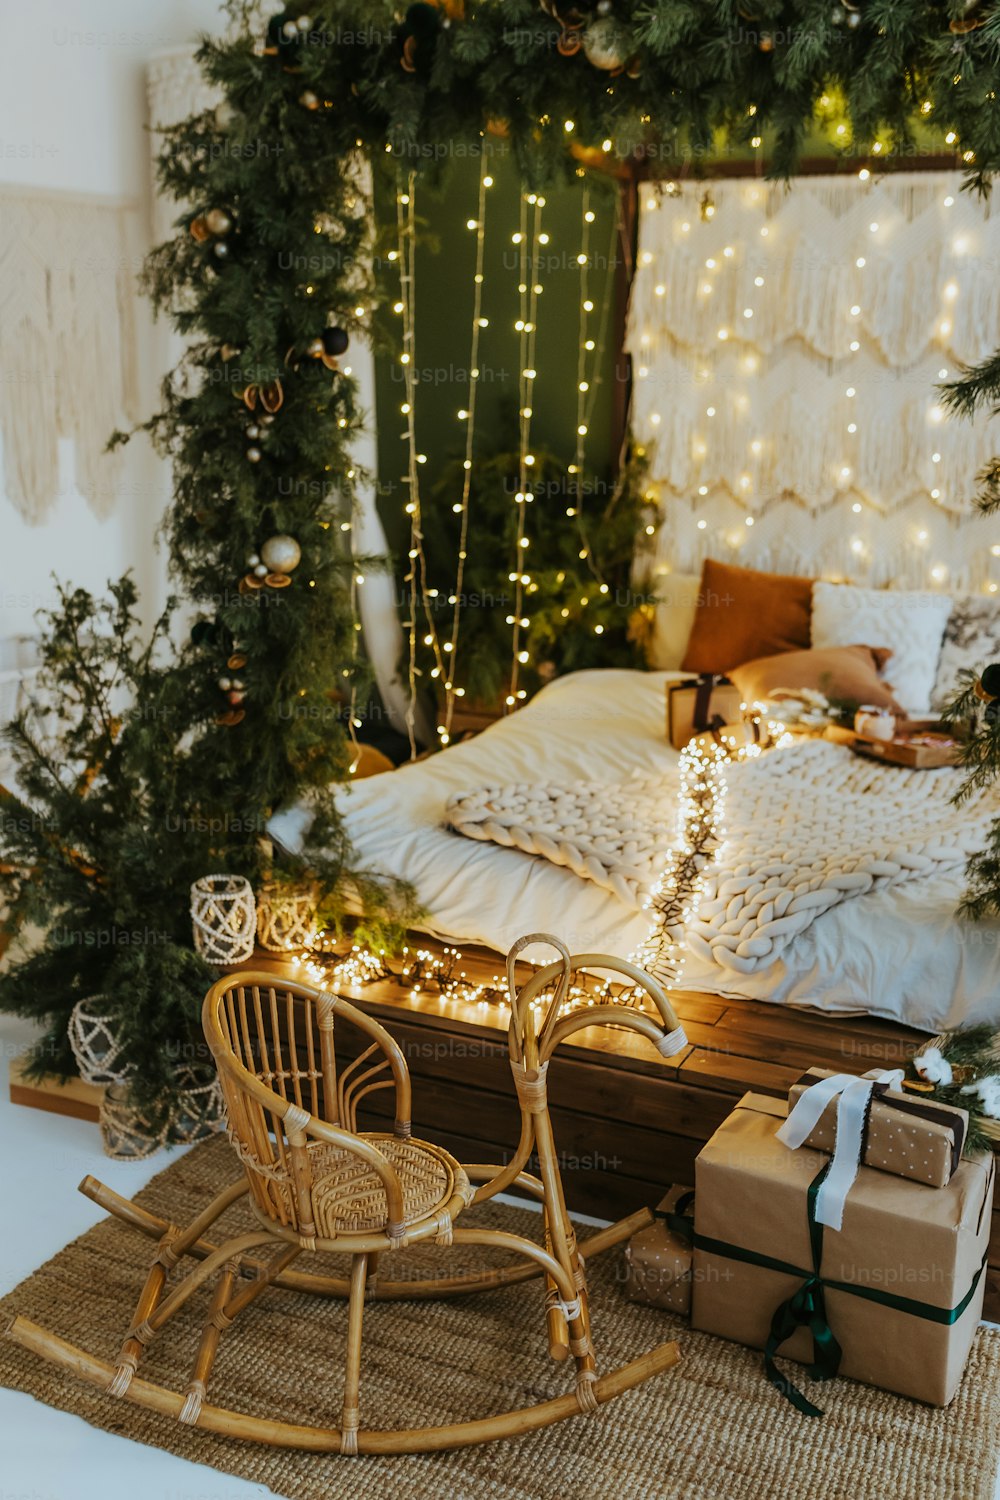 Un dormitorio decorado para Navidad con una cama de trineo